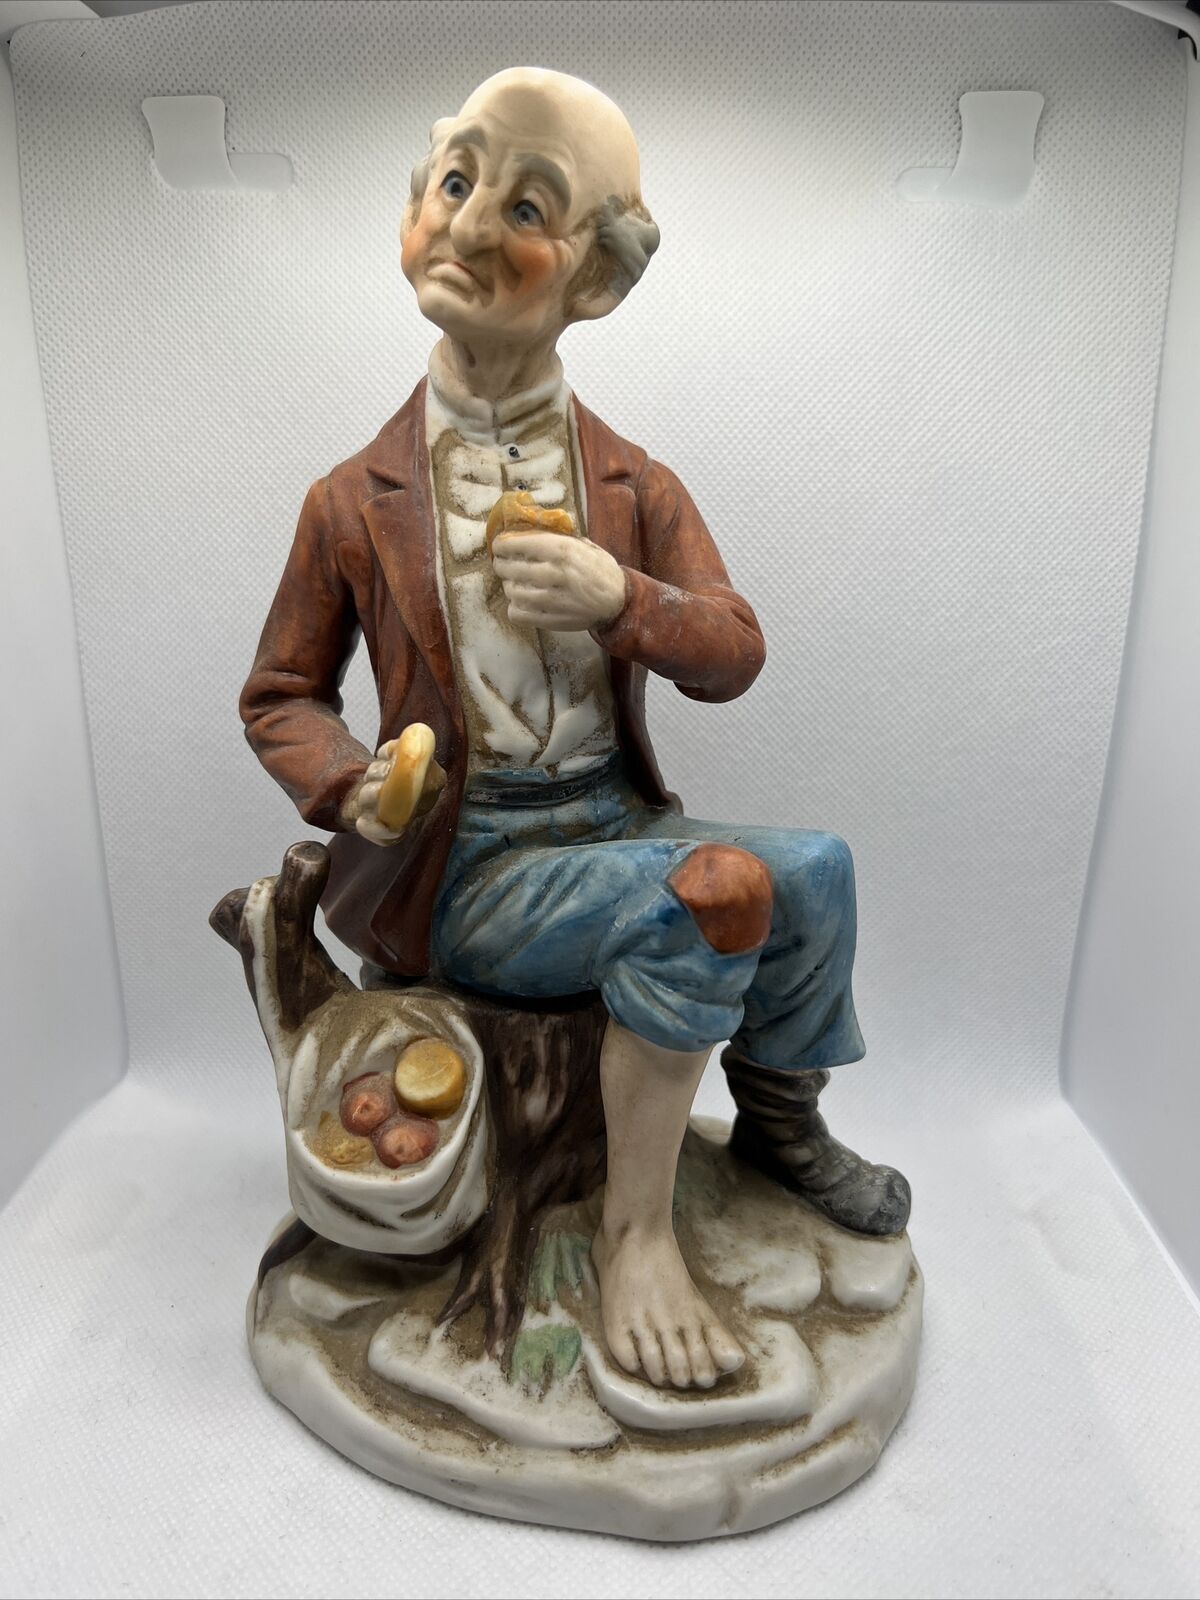 Vintage Porcelain figurine Of a Old sad Poor man eating some veggies, One shoe